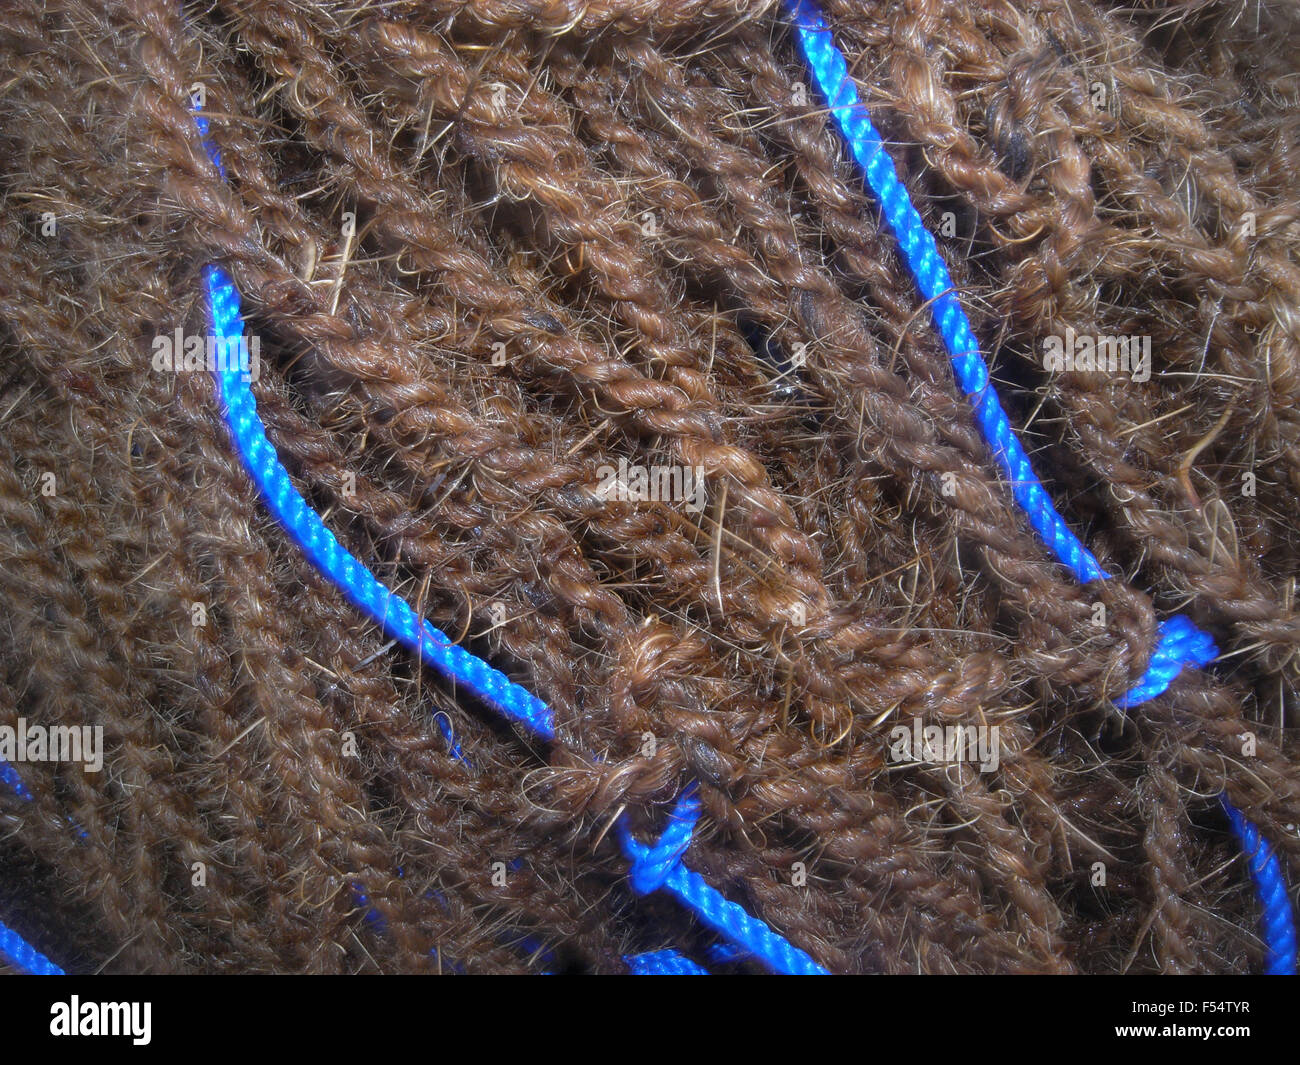 Redes de pesca tradicional (biodegradables) fibra de coco (en lugar de nylon moderno de plástico), Galle, Sri Lanka Foto de stock